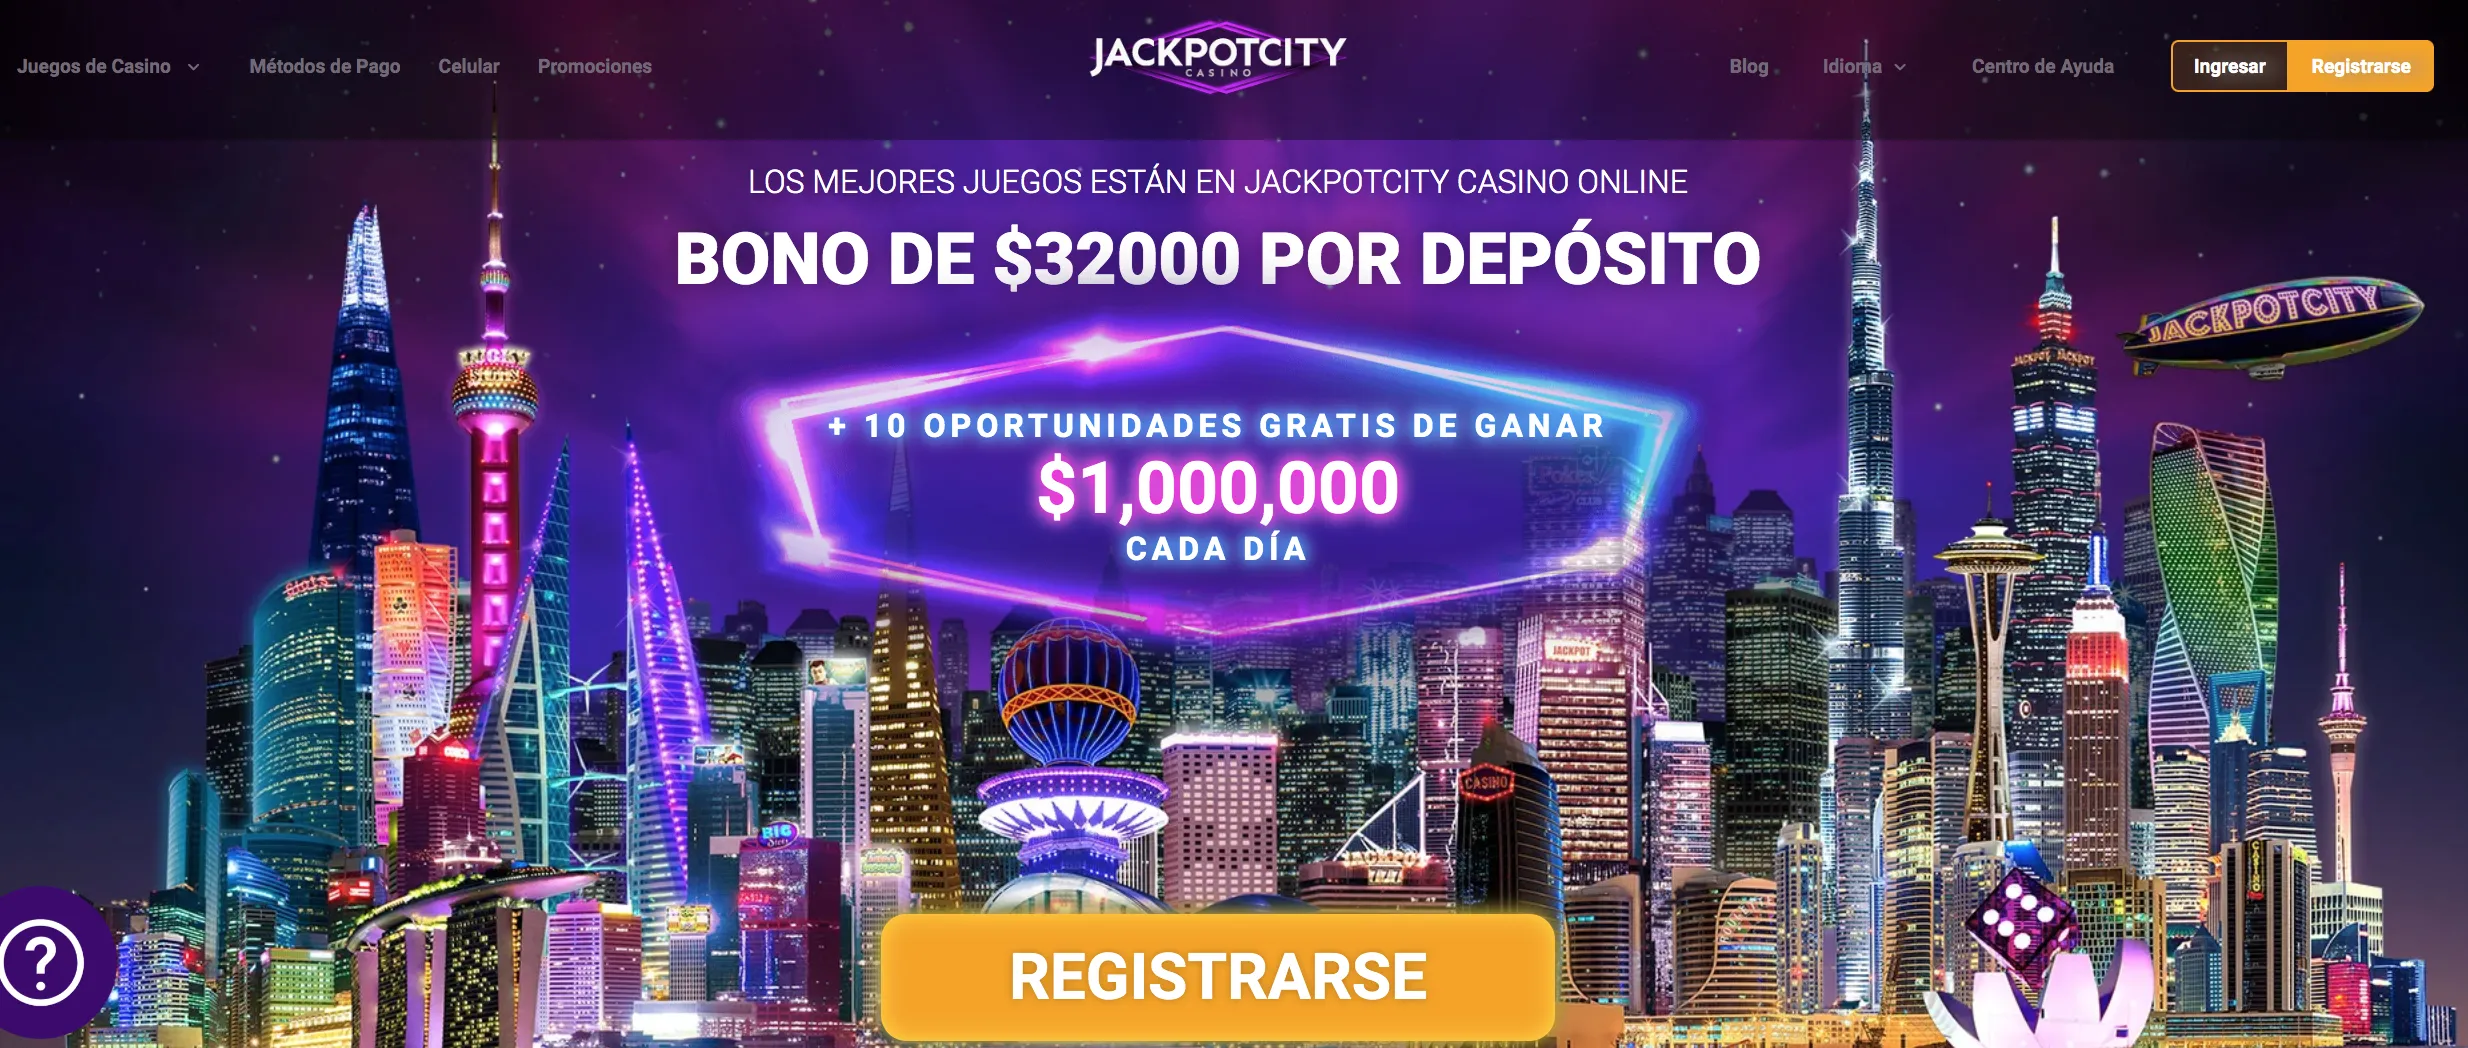 JackpotCity Chile